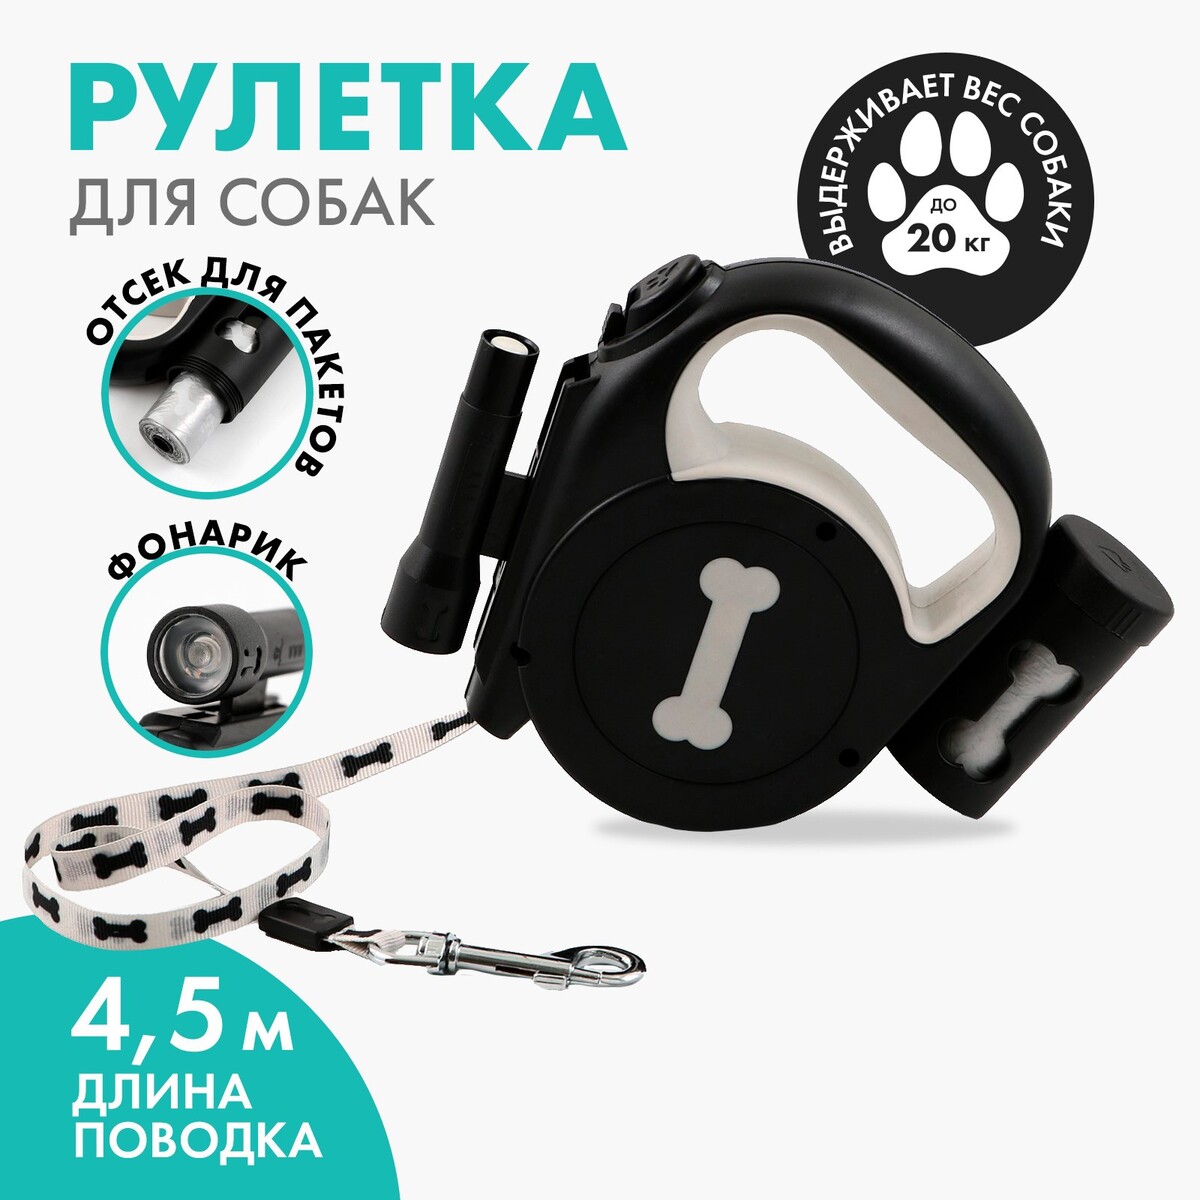 Рулетка рулетка для собак super dog 4 м вес животного до 12 кг